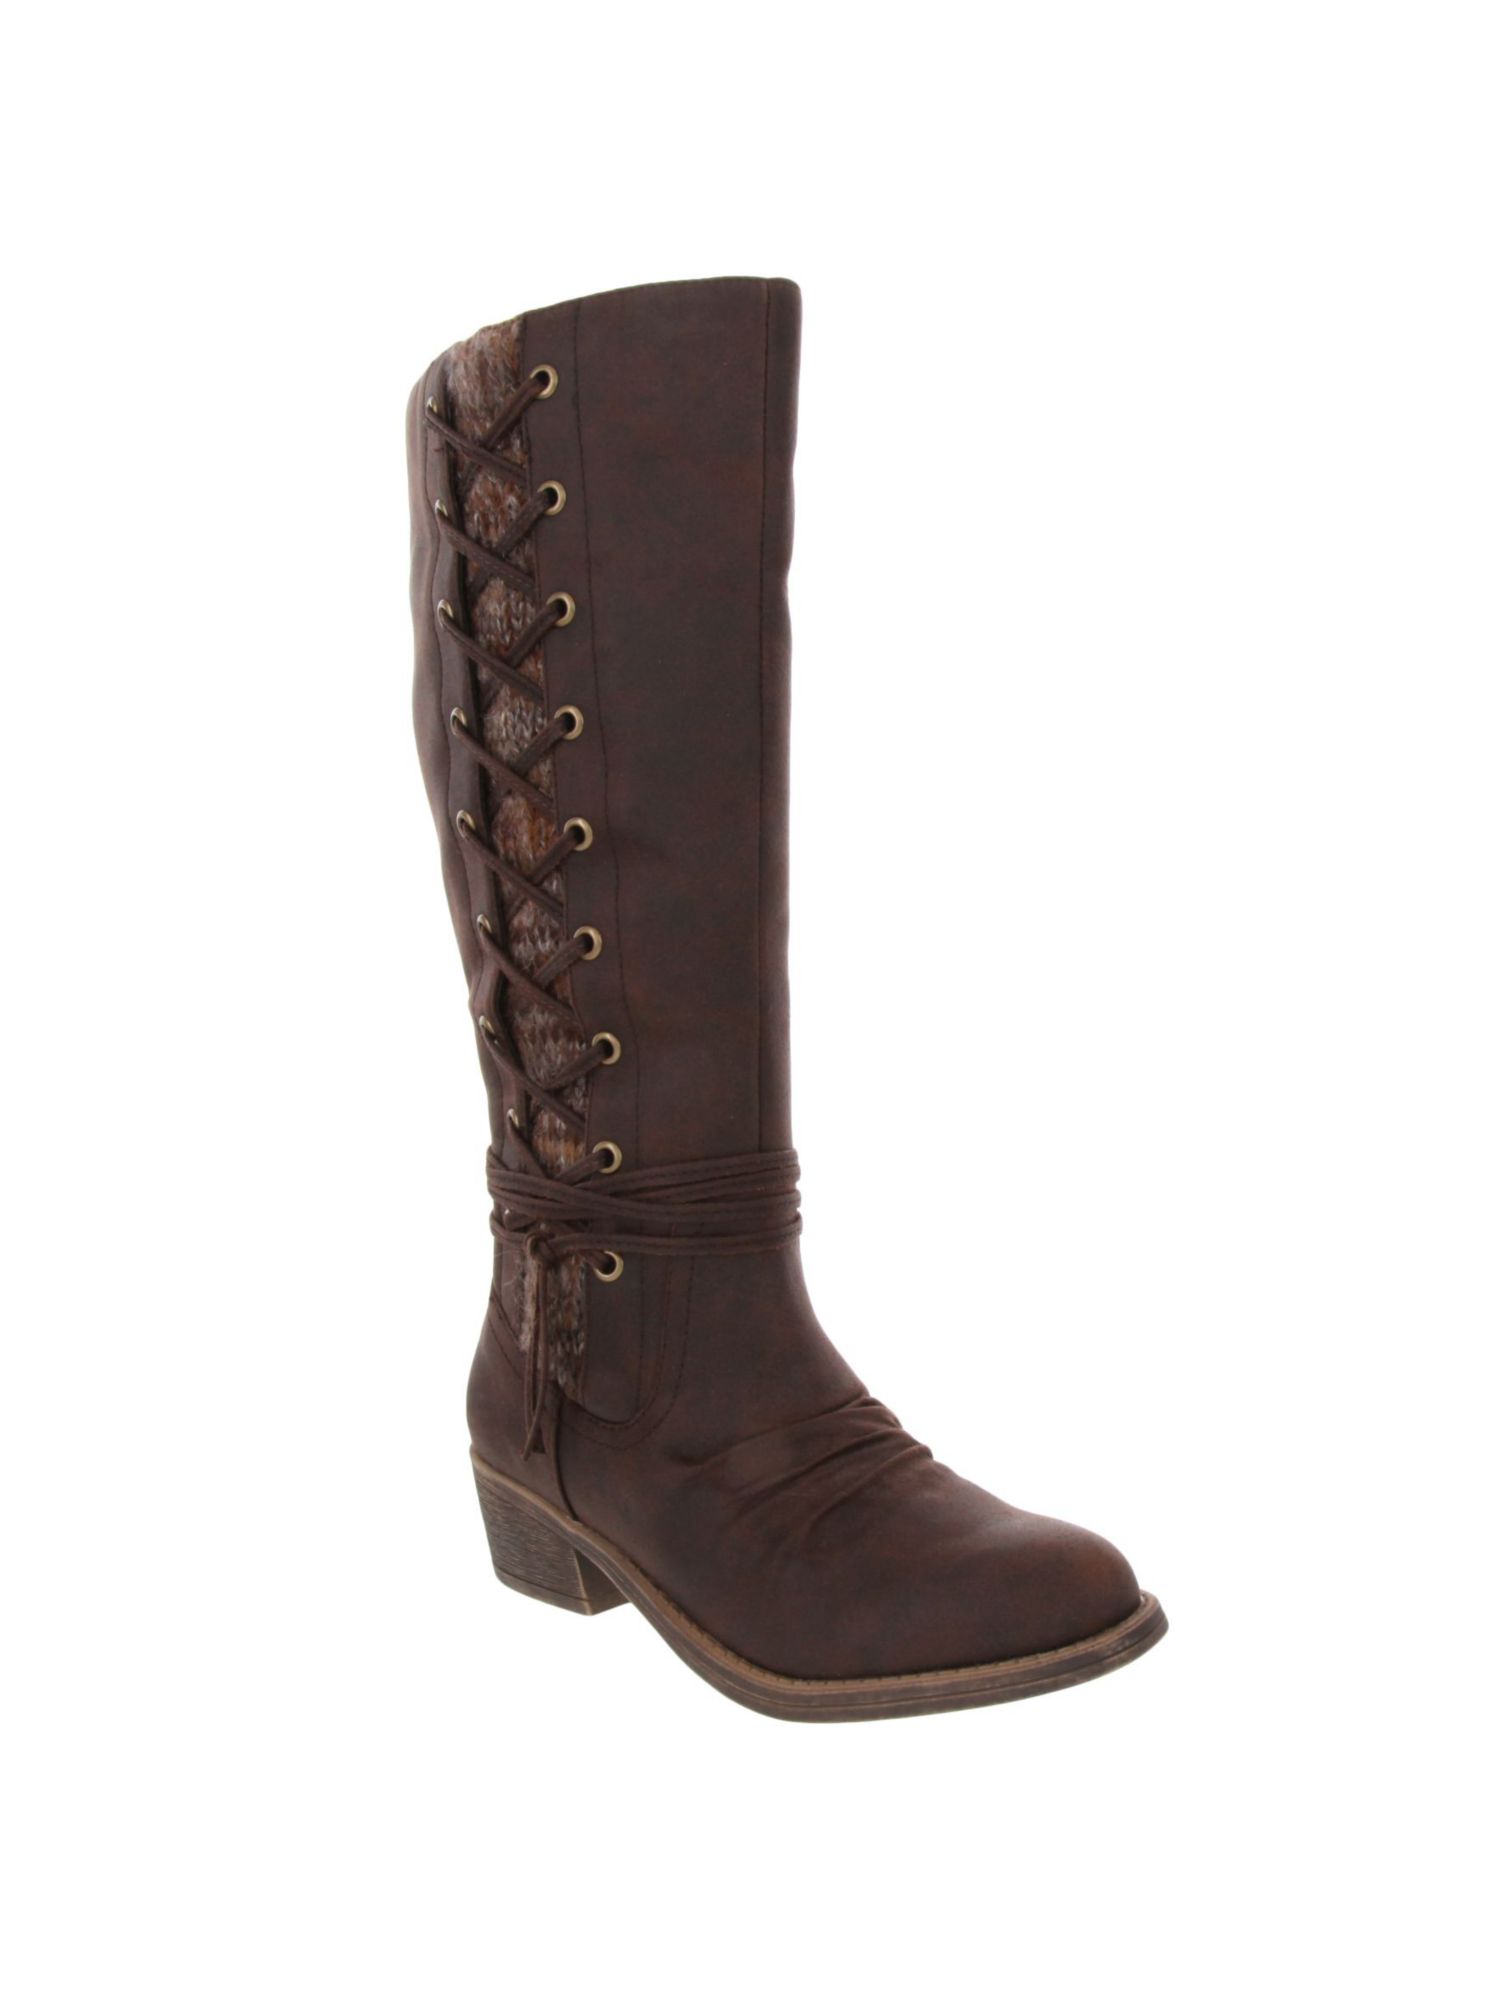 SUGAR Womens Brown Comfort Tacks Almond Toe Block Heel Zip-Up Boots Shoes 9.5